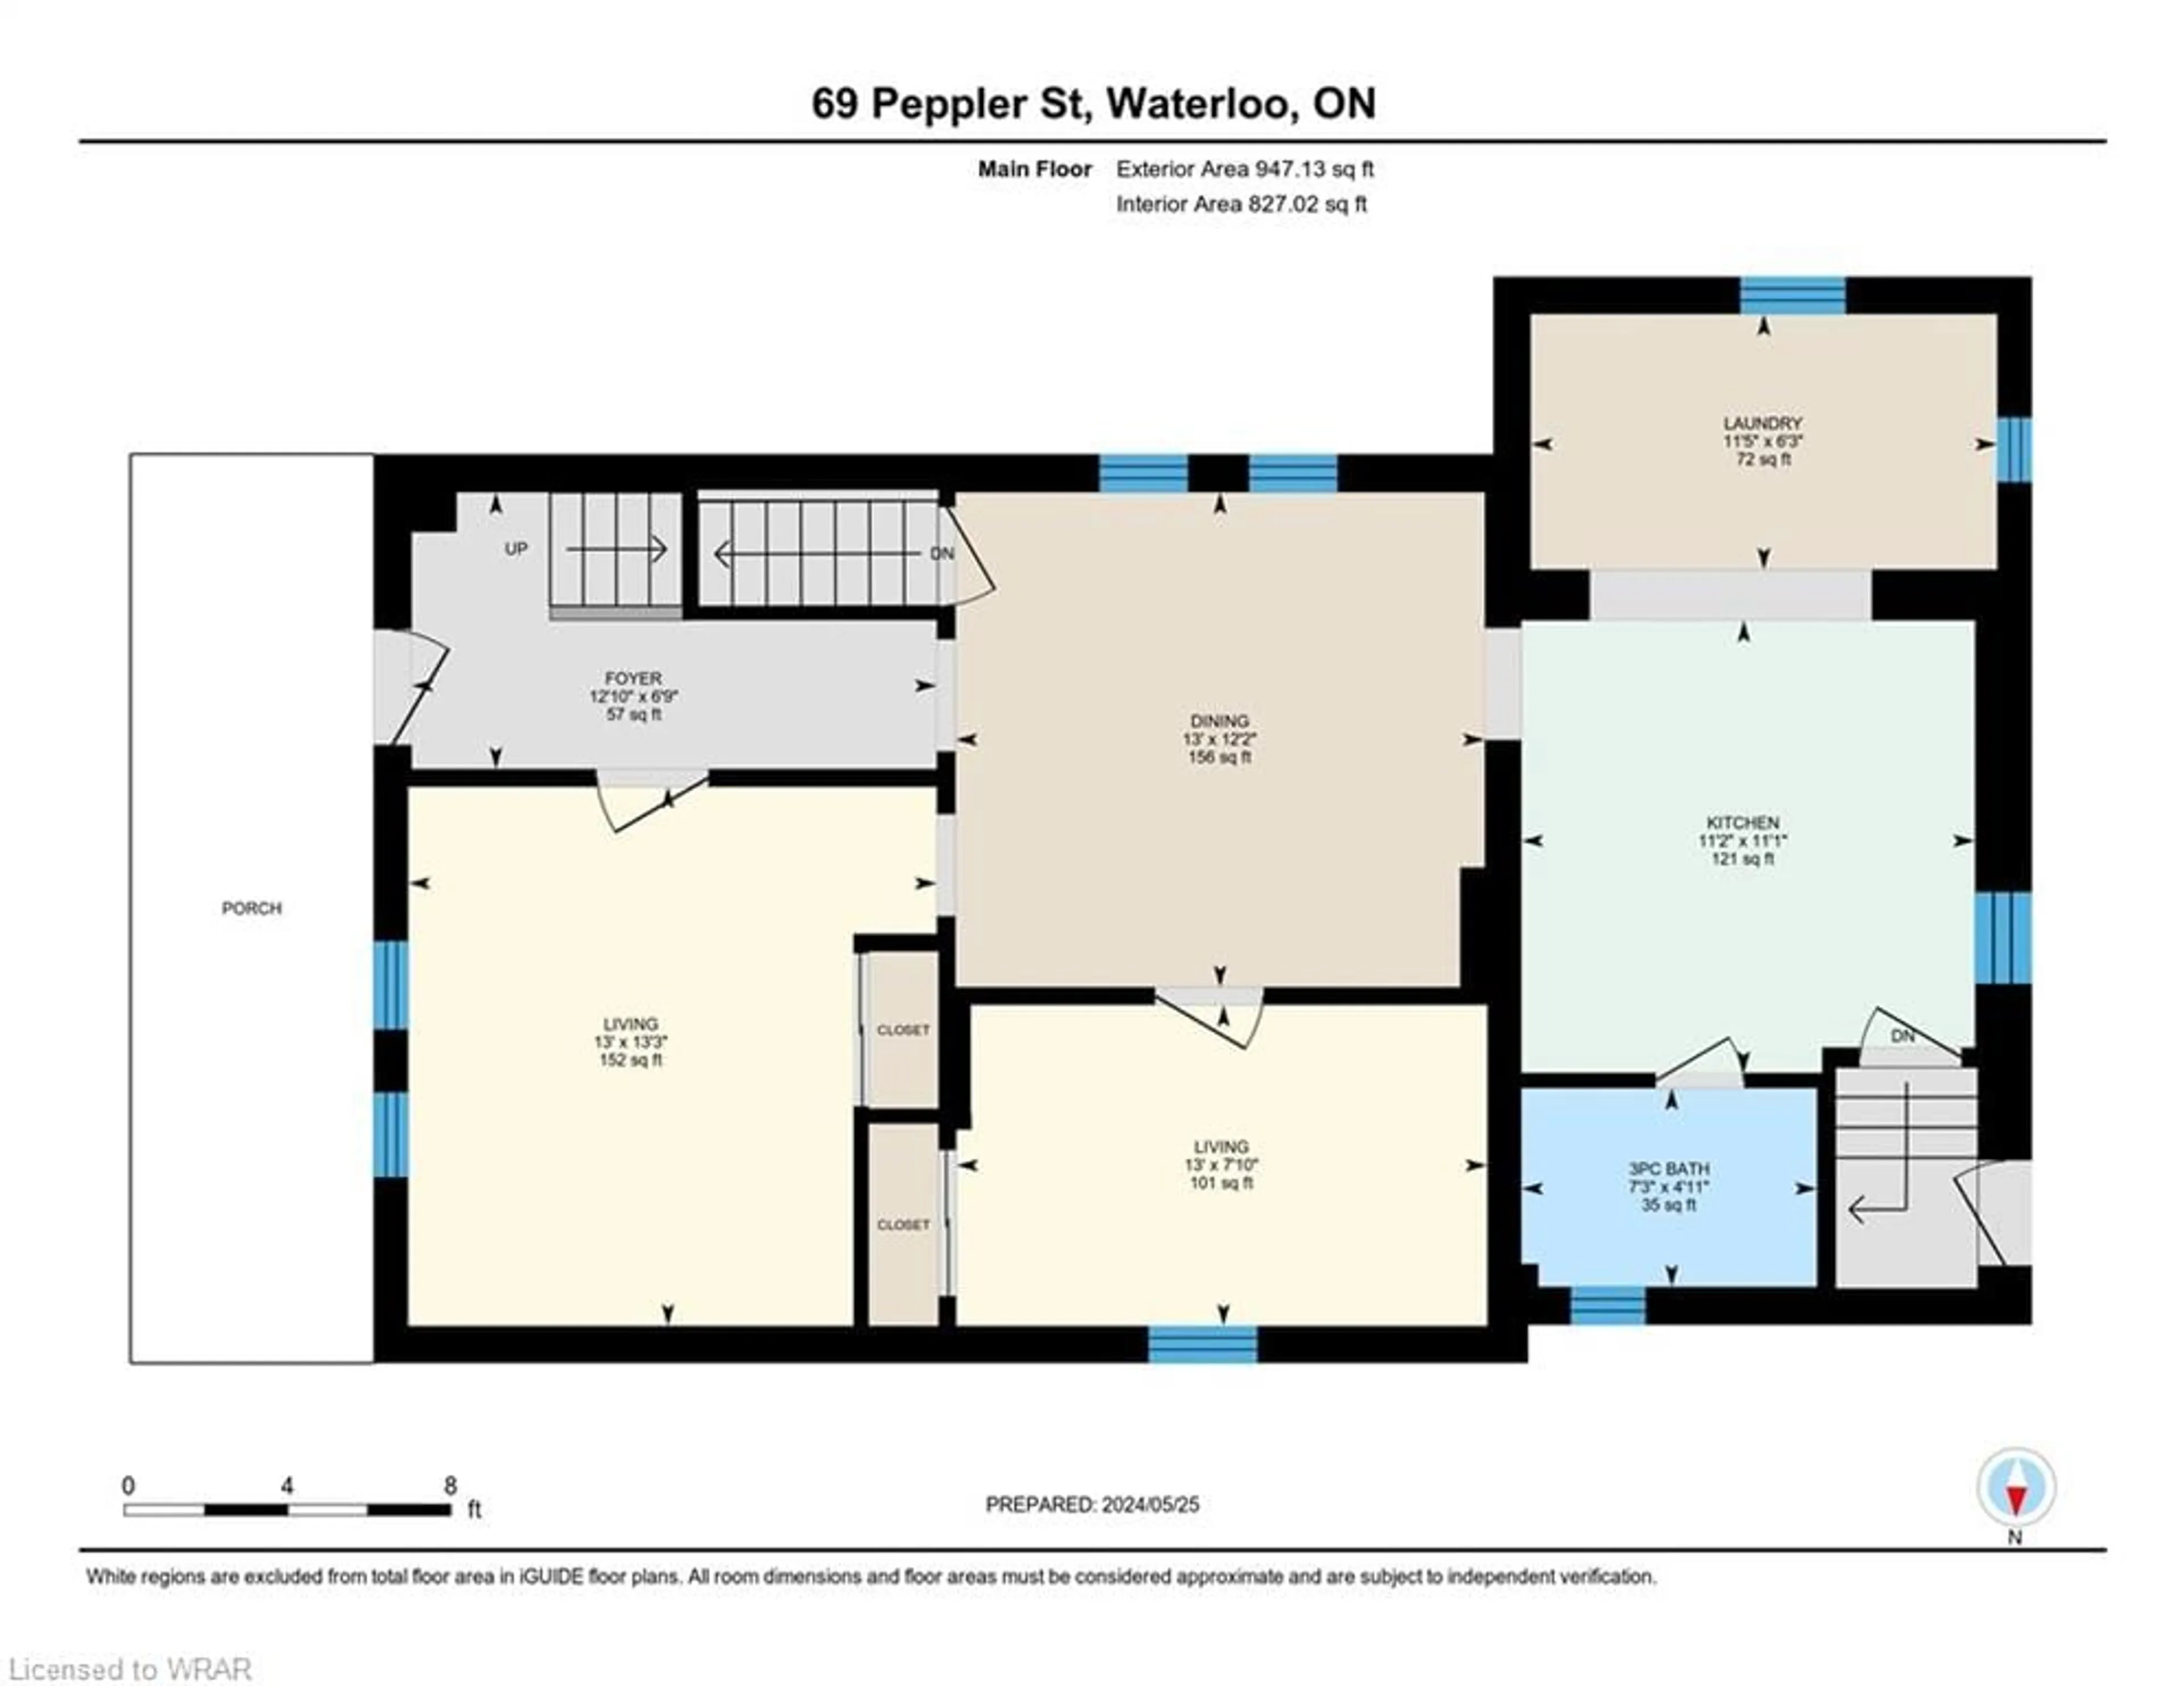 Floor plan for 69 Peppler St, Waterloo Ontario N2J 3C9